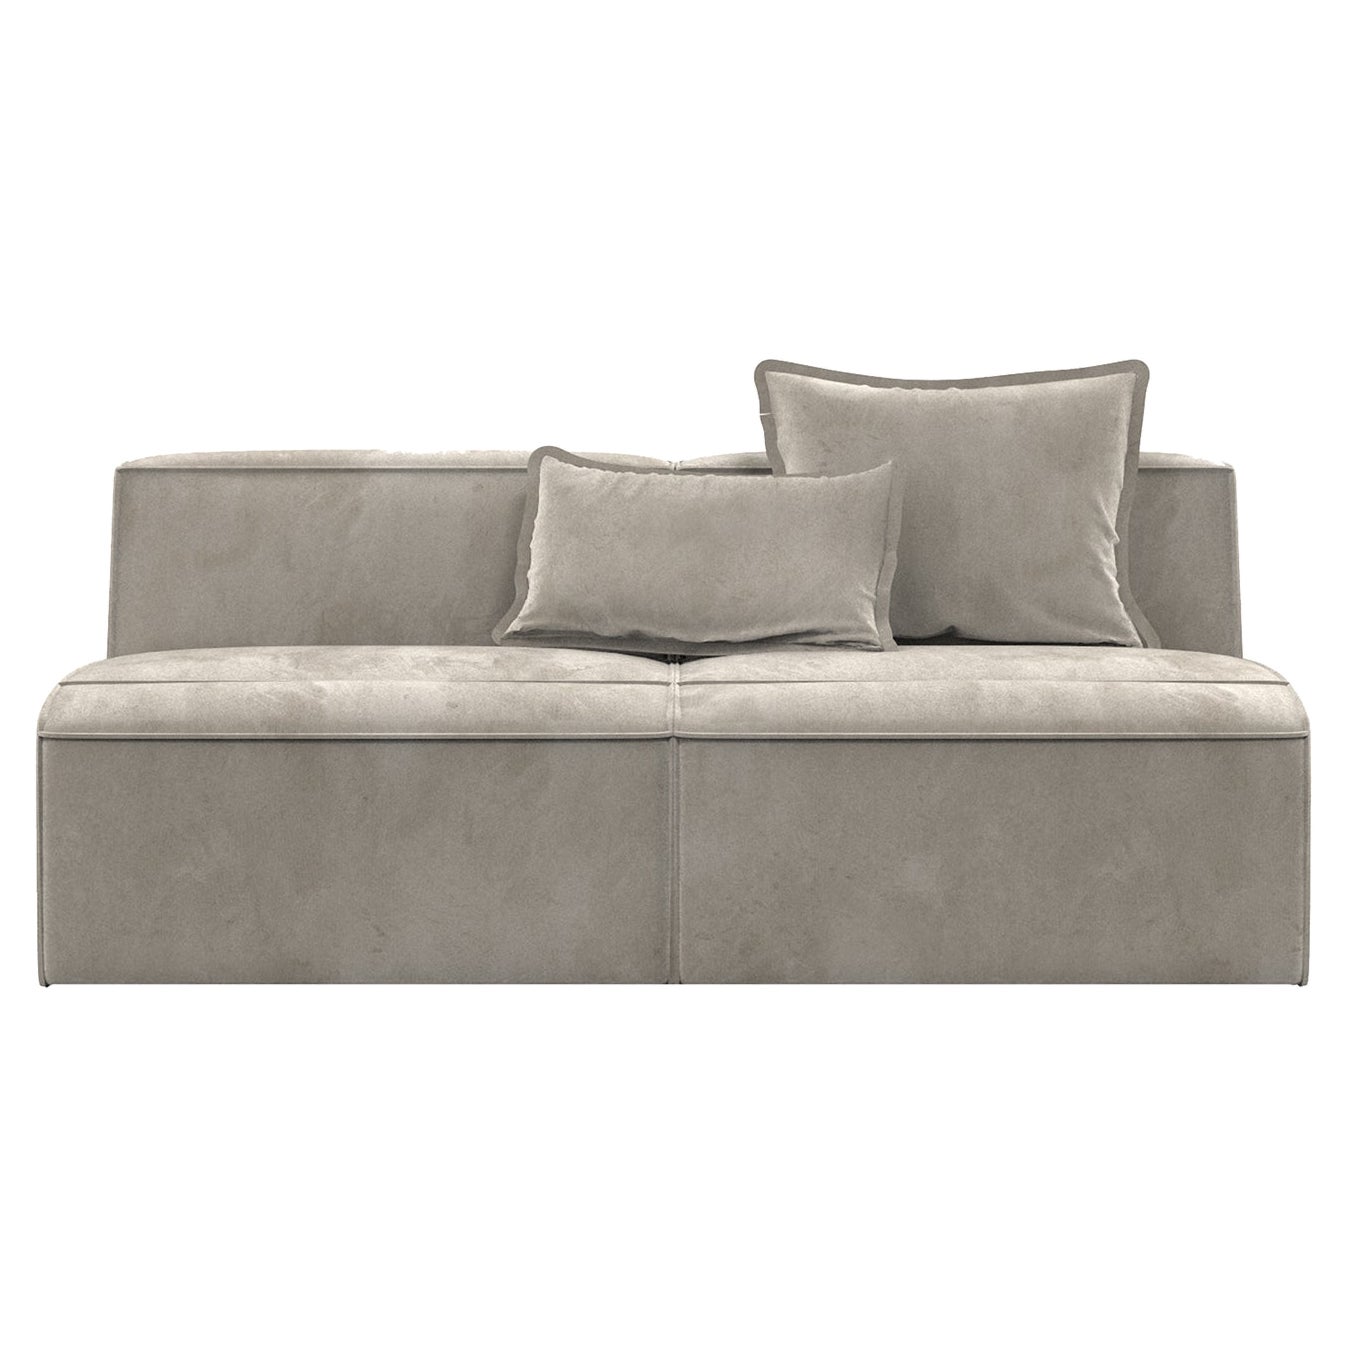 Infinito Small Gray Sofa by Lorenza Bozzoli For Sale